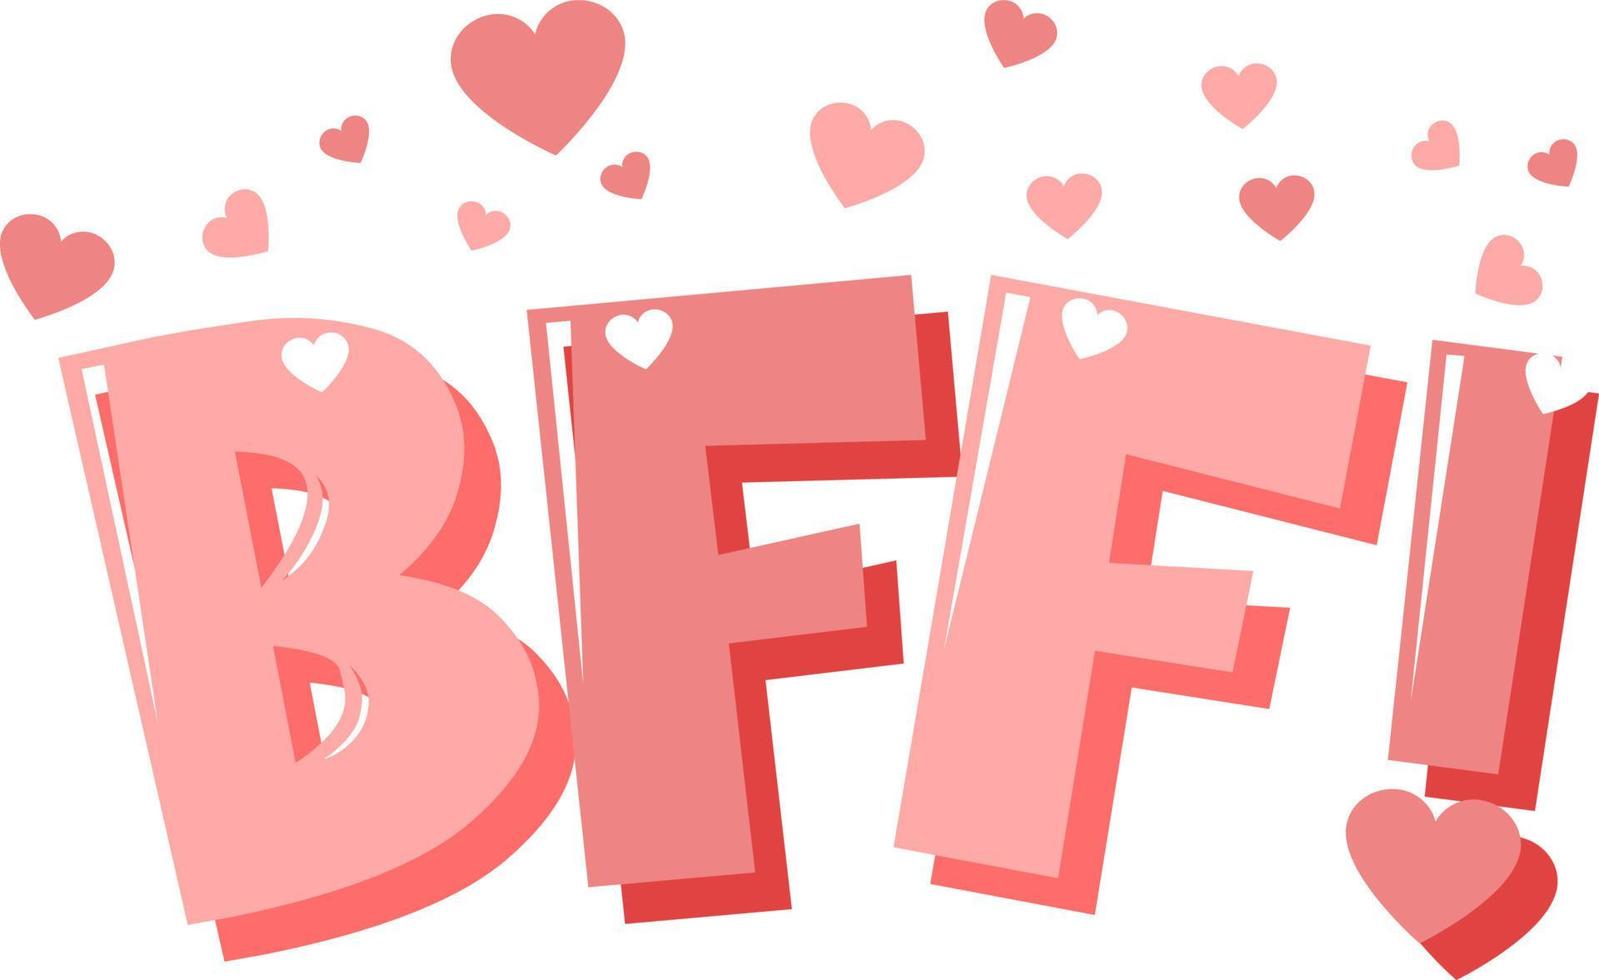 bff o mejor amigo para siempre letras sobre fondo blanco vector